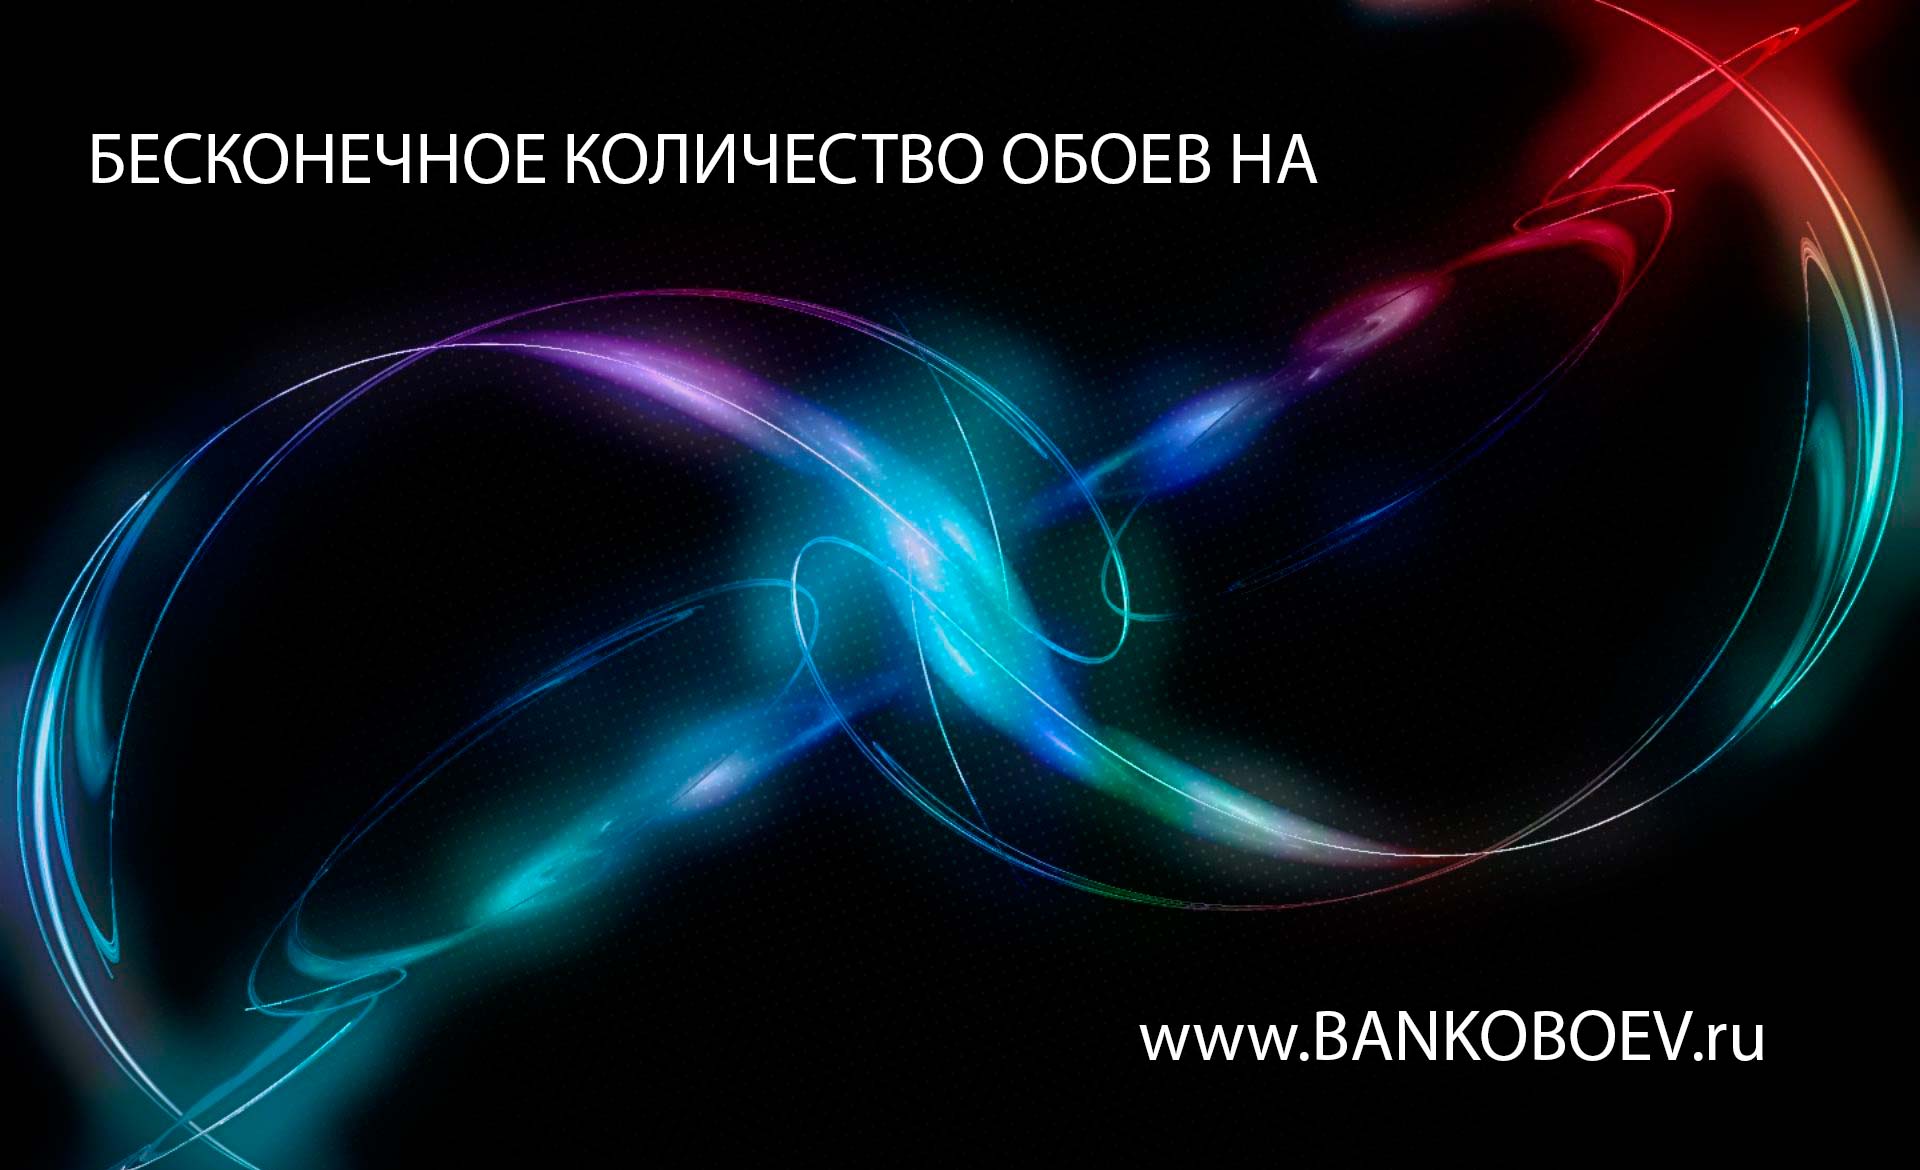 Bankoboev Ru Image Mji1otkx Jpg